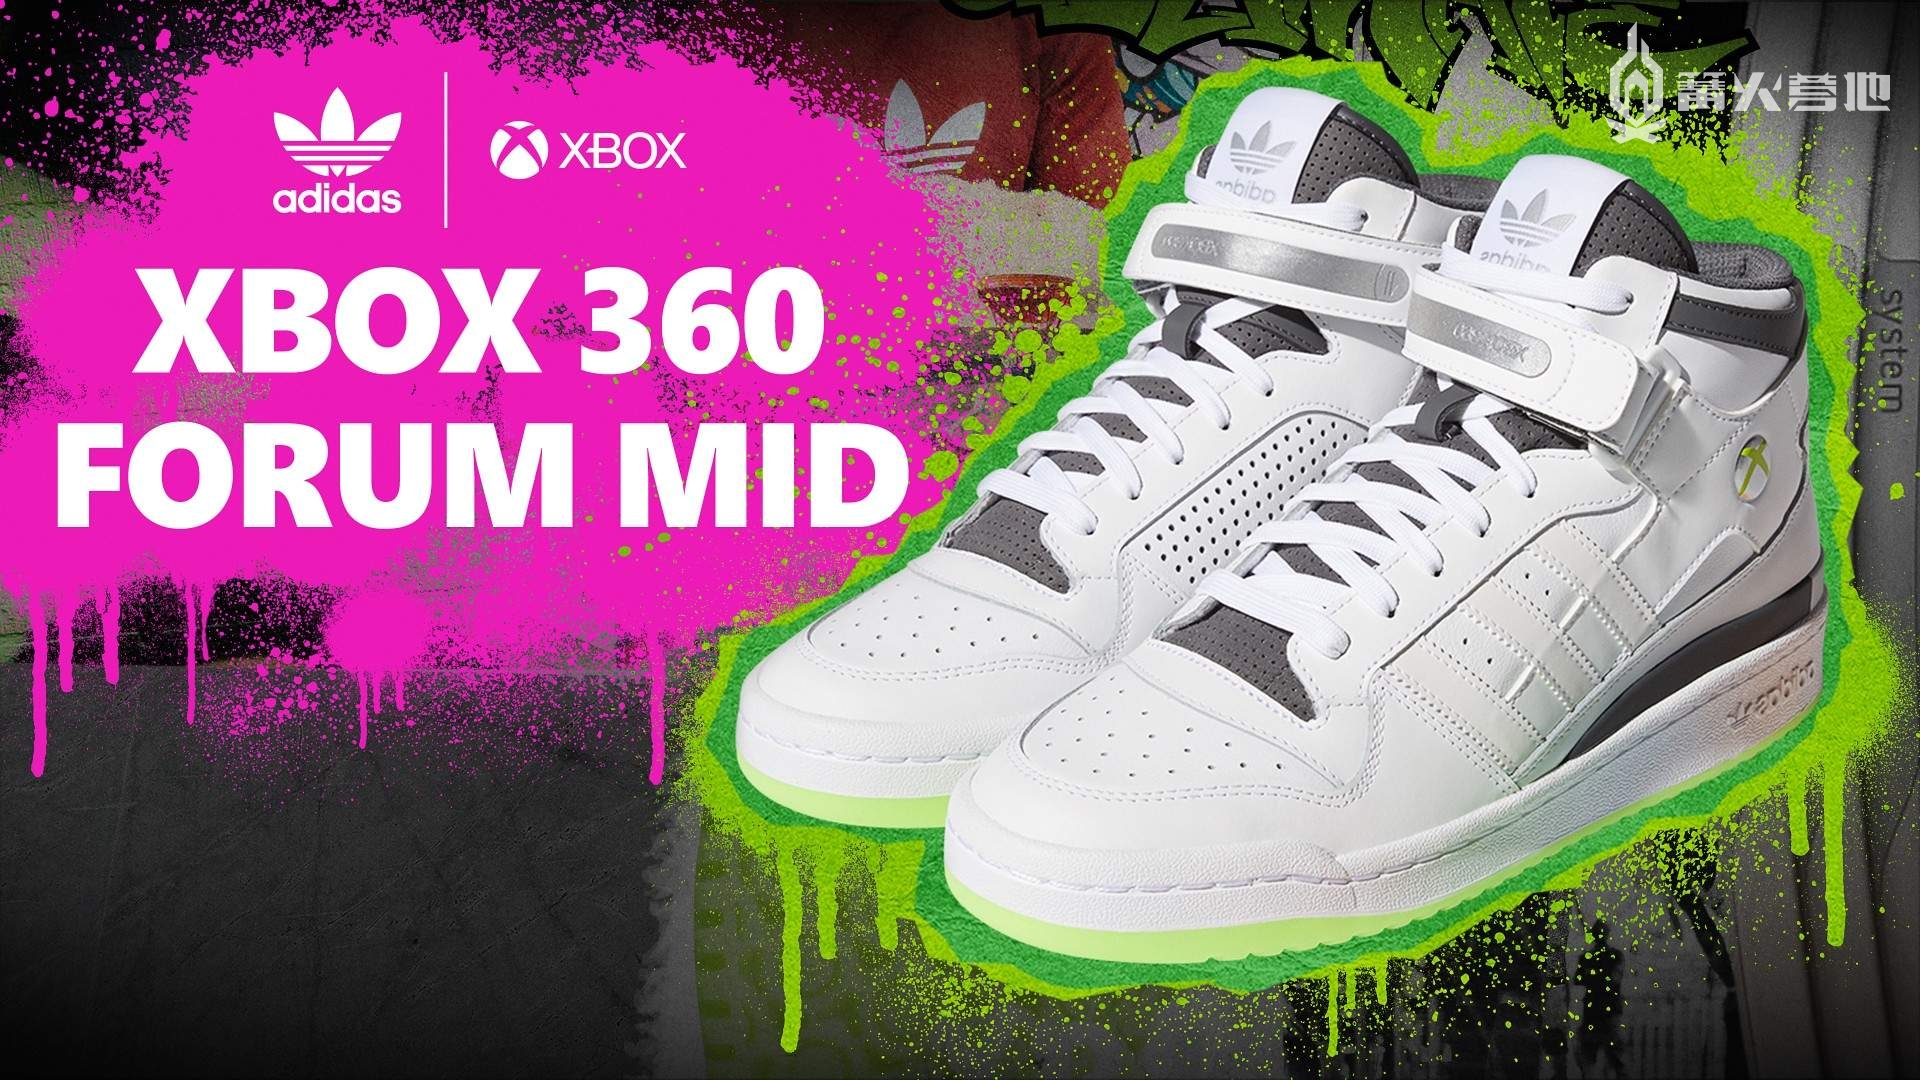 阿迪达斯推出 Xbox 360 联名主题球鞋本周北美开卖